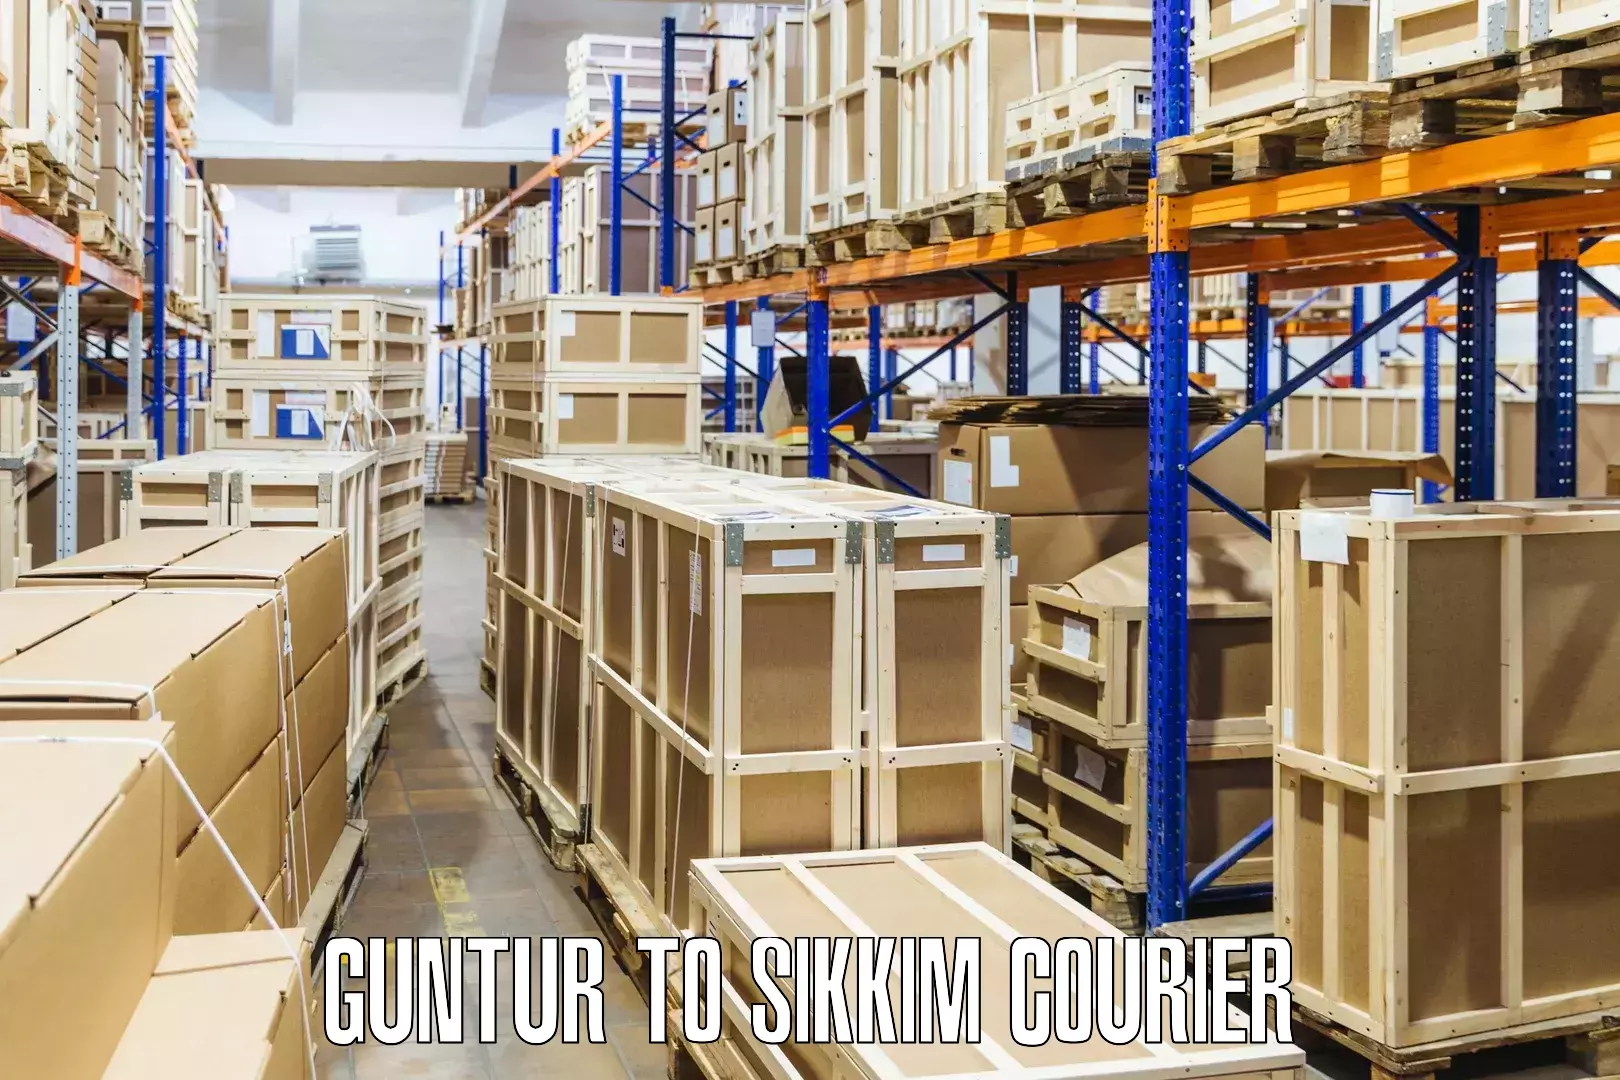 Customer-oriented courier services Guntur to North Sikkim